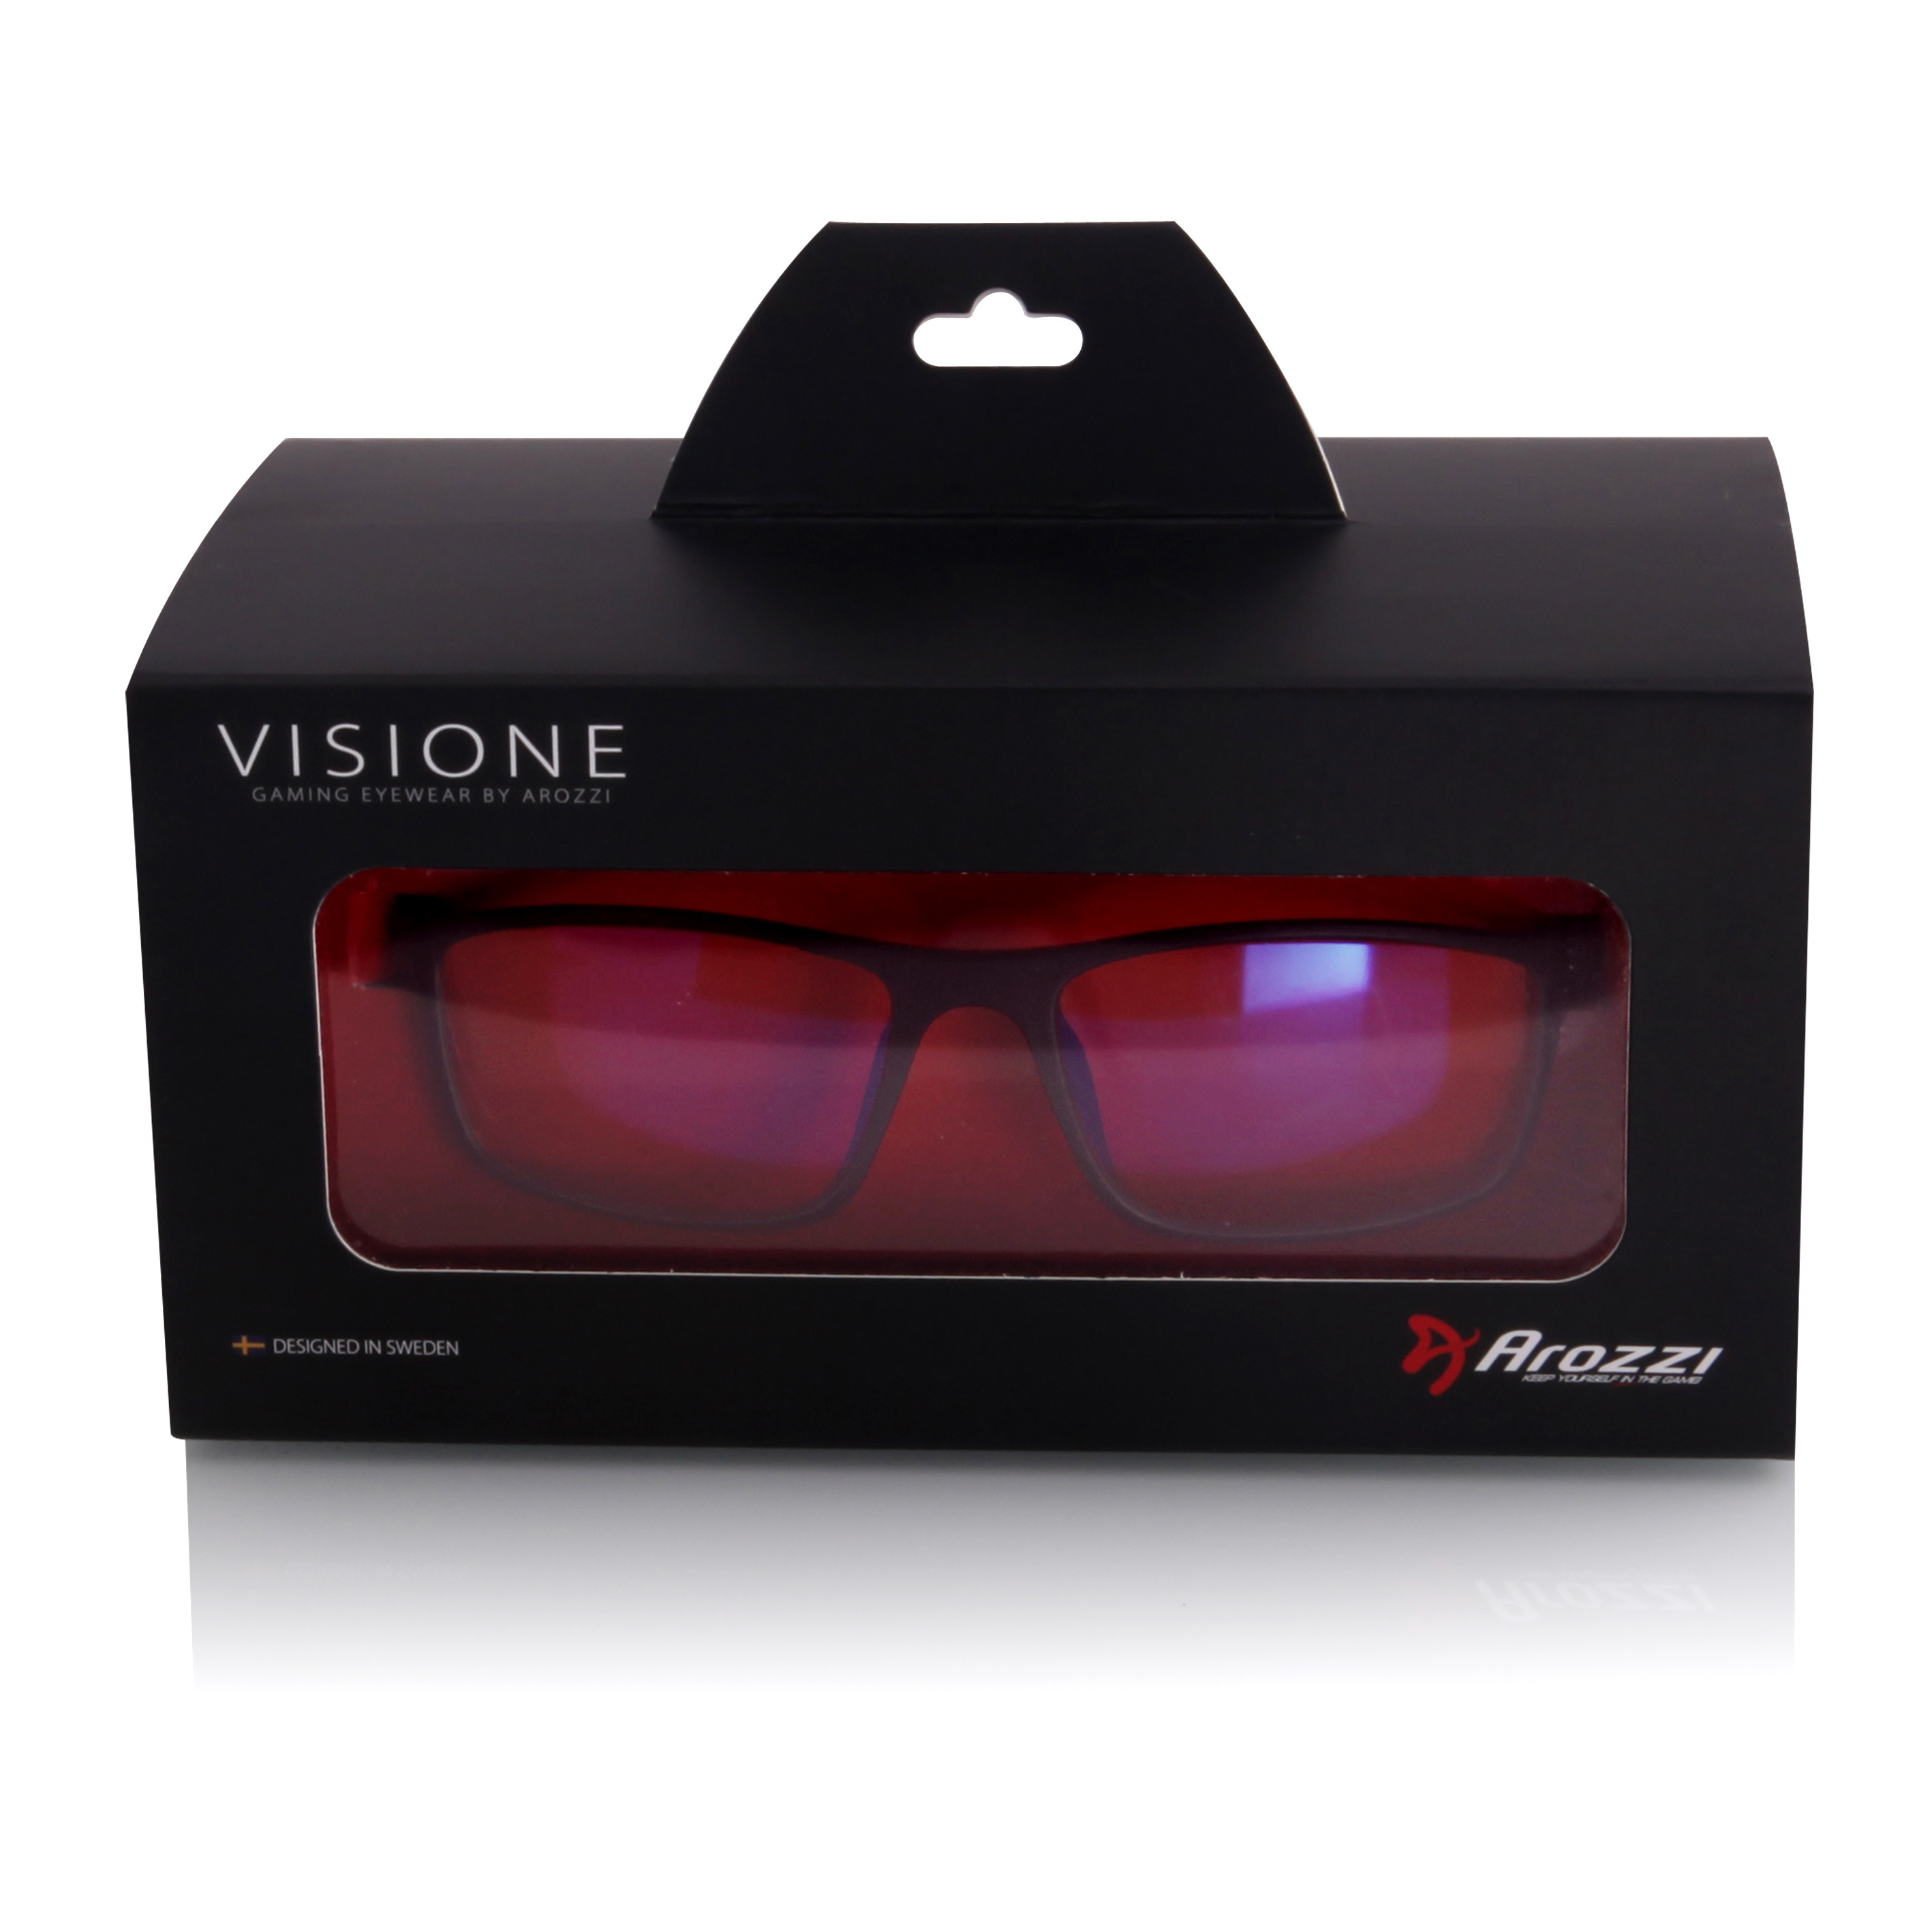 Arozzi Visione VX200, purpurová, herní brýle | AB-COM.cz